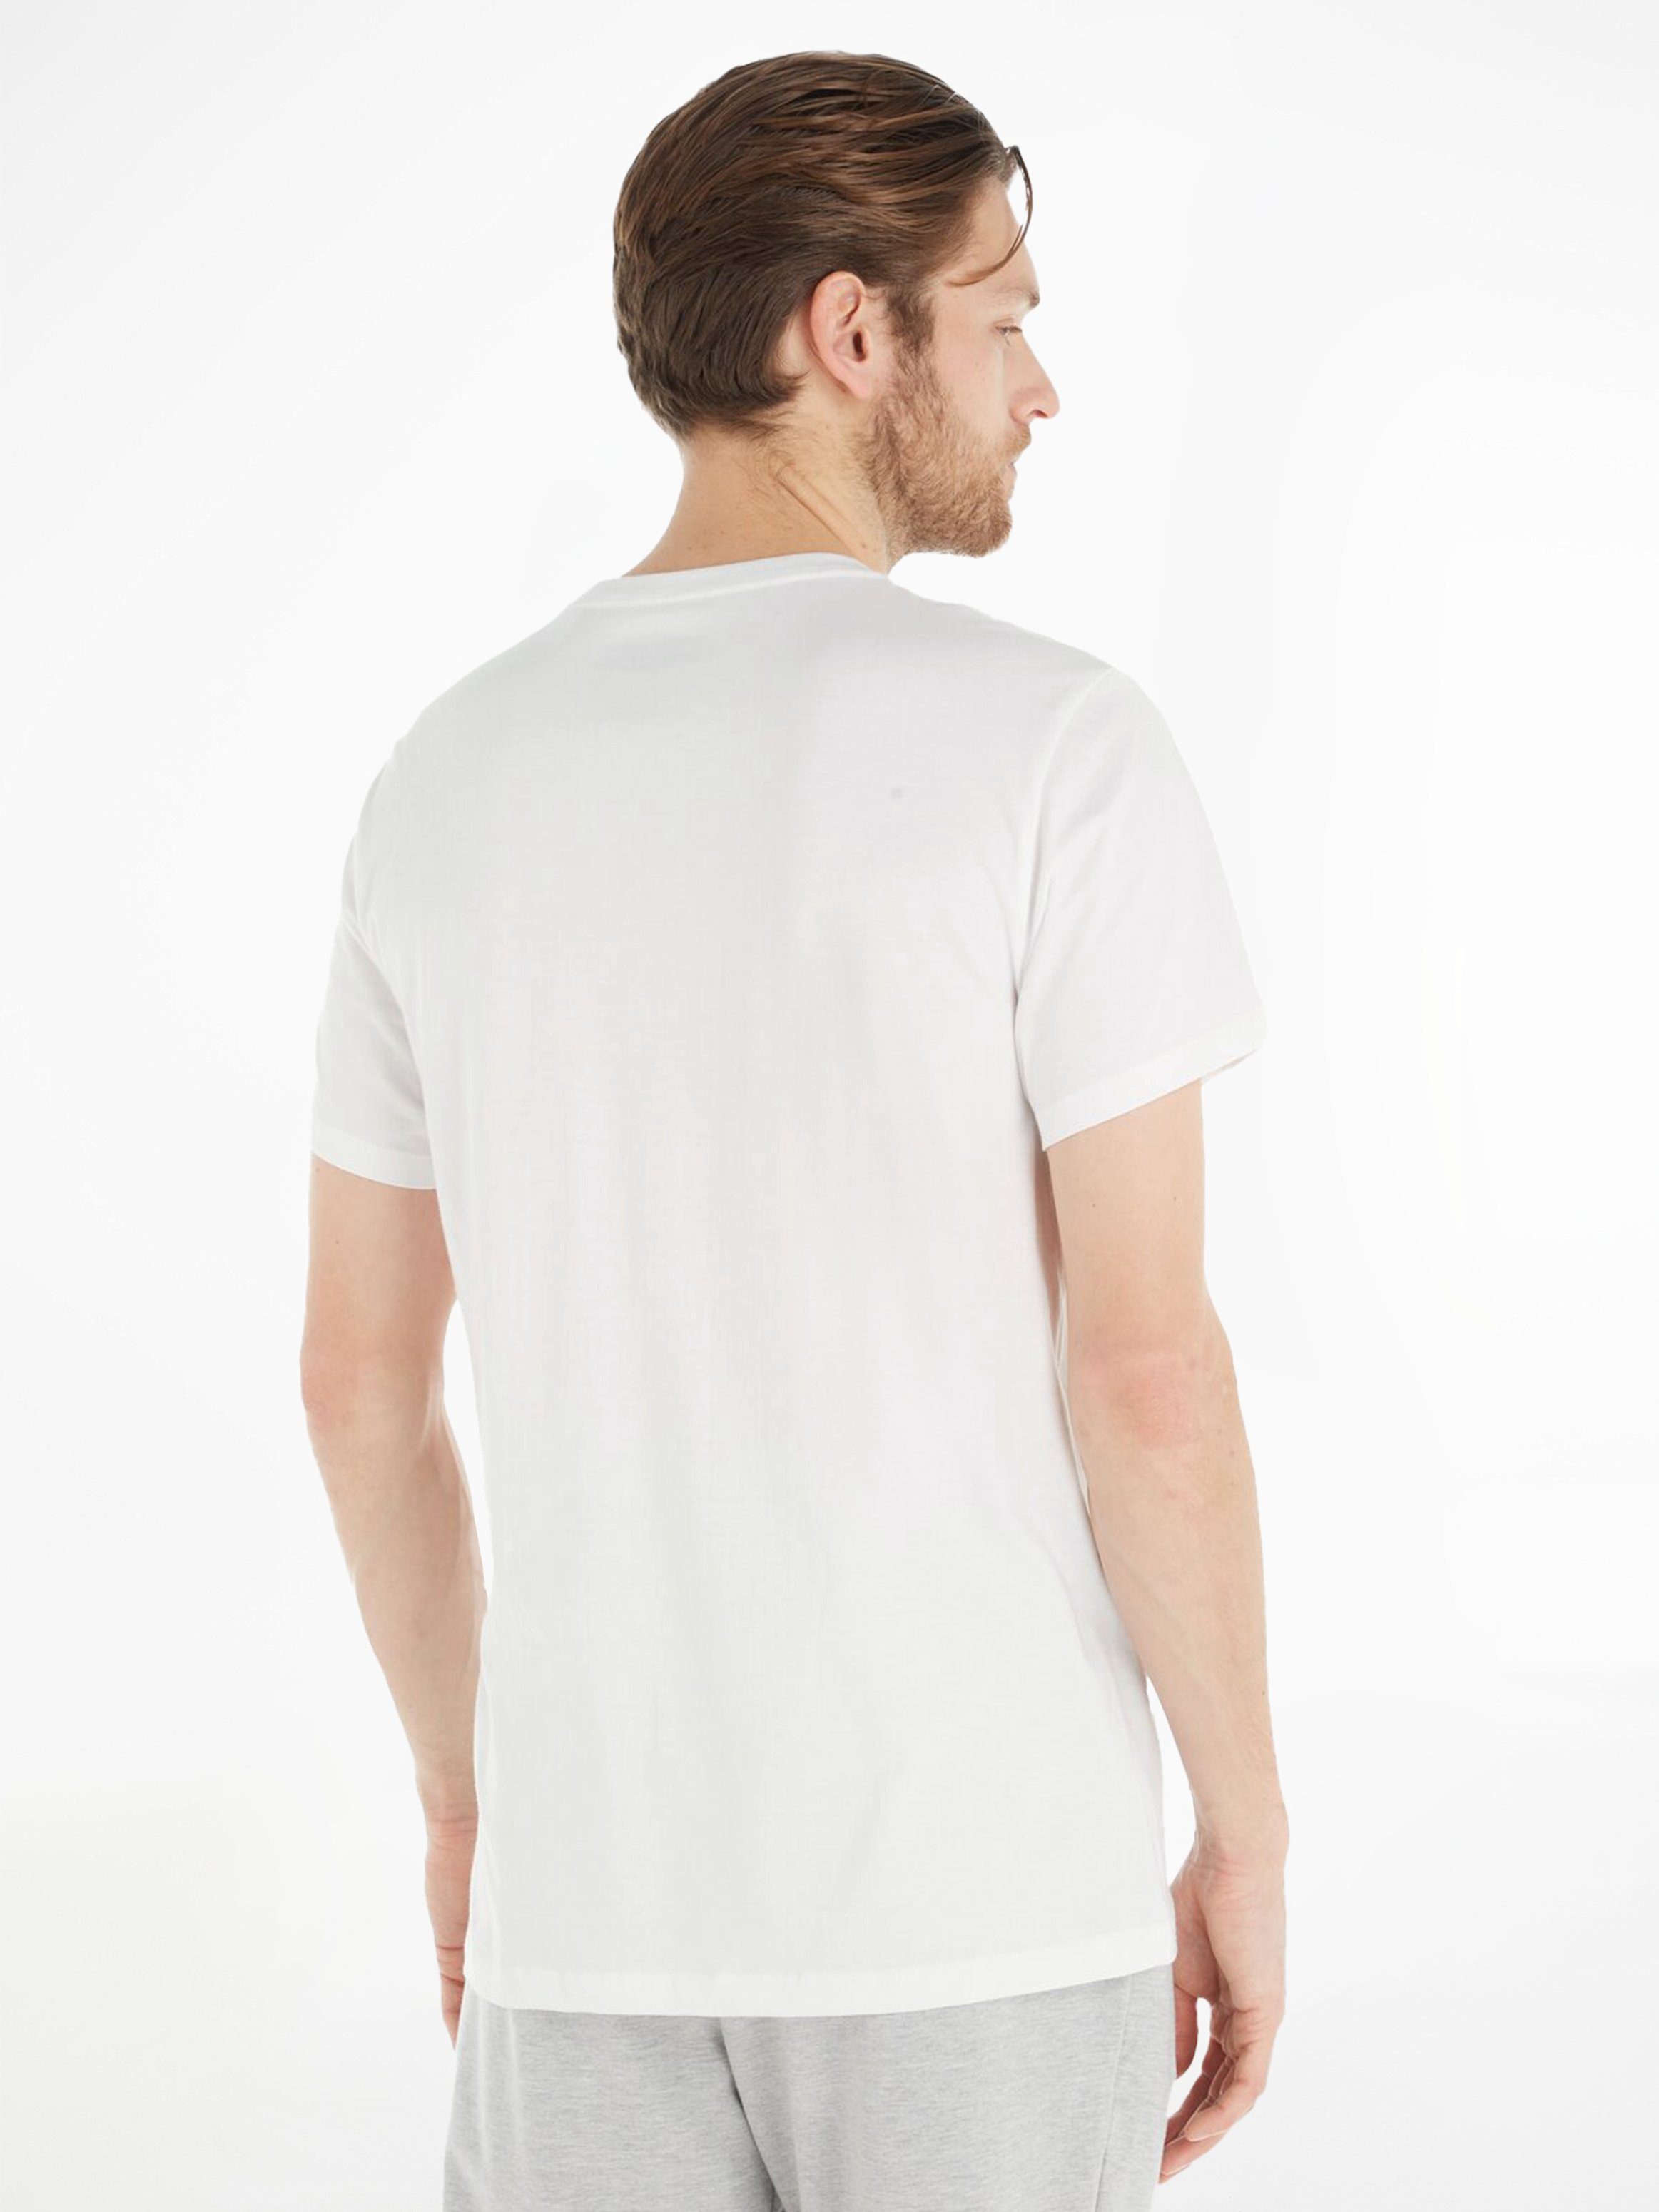 Calvin Klein Underwear T-Shirt (3er-Pack) weiß uni